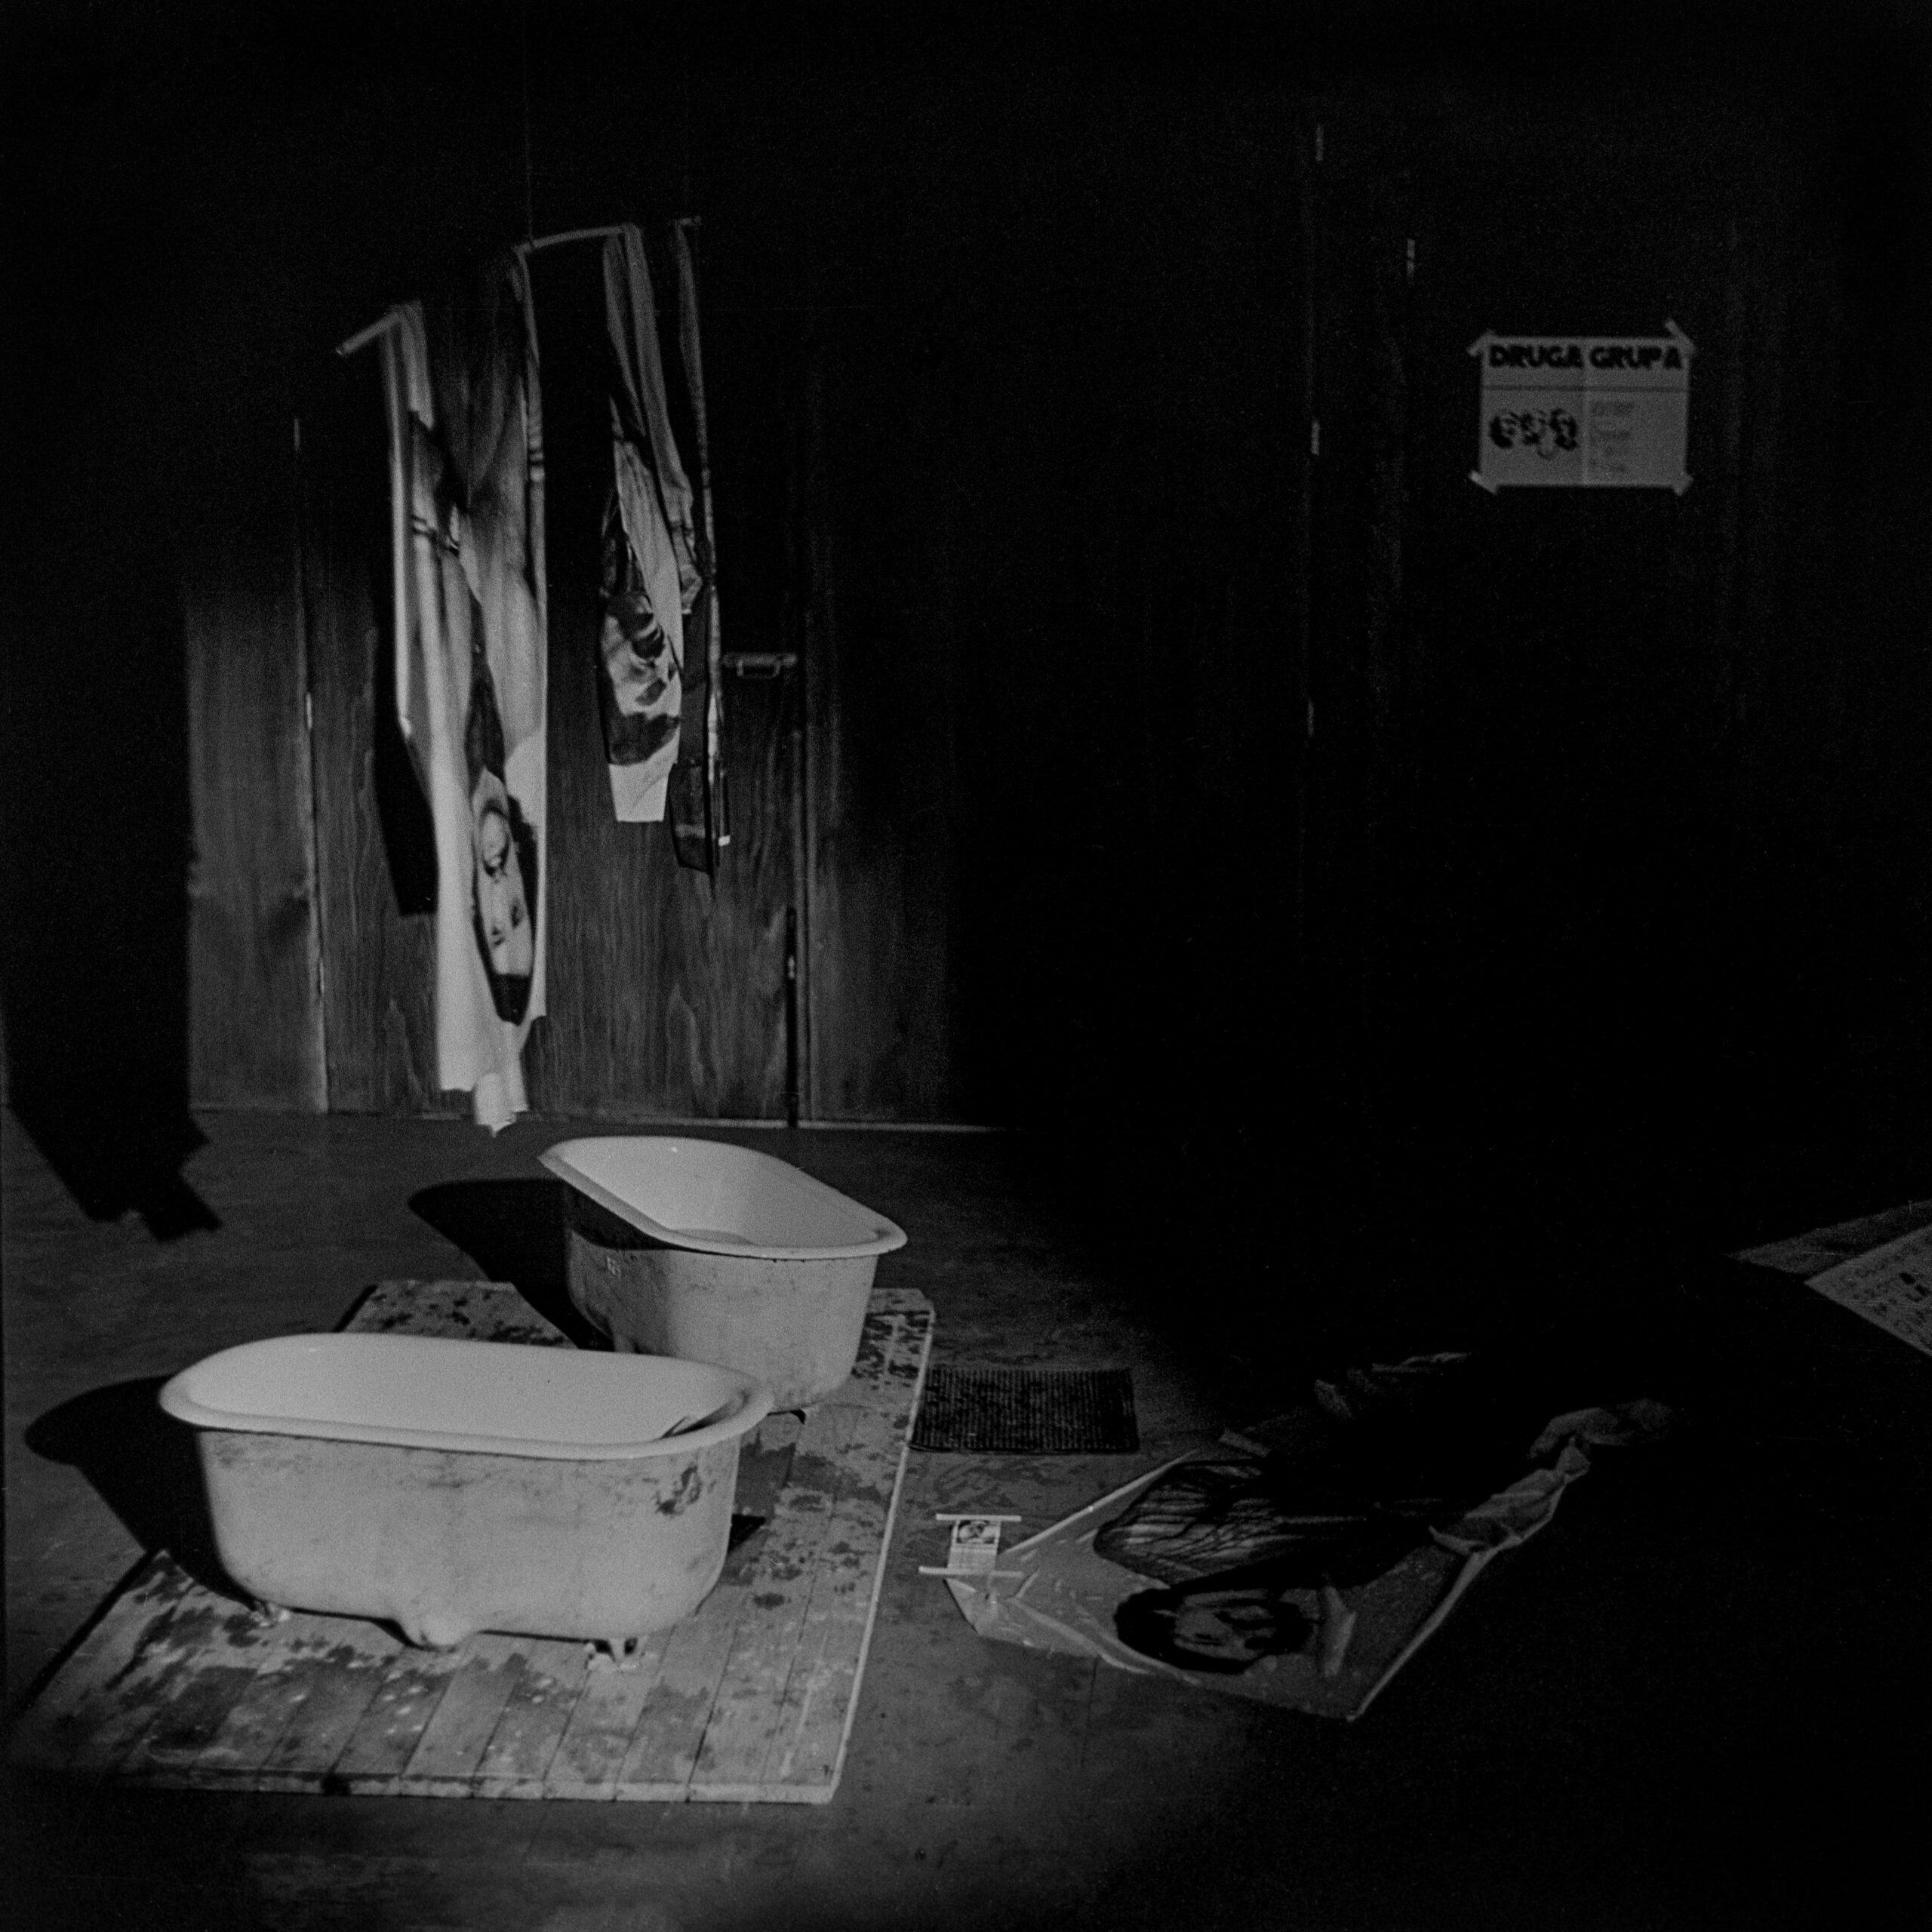 Archiwalne zdjęcie; wnętrze ciemnego pomieszczenia, na podłodze stoją małe wanienki do których skapuje woda z dużych odbitek